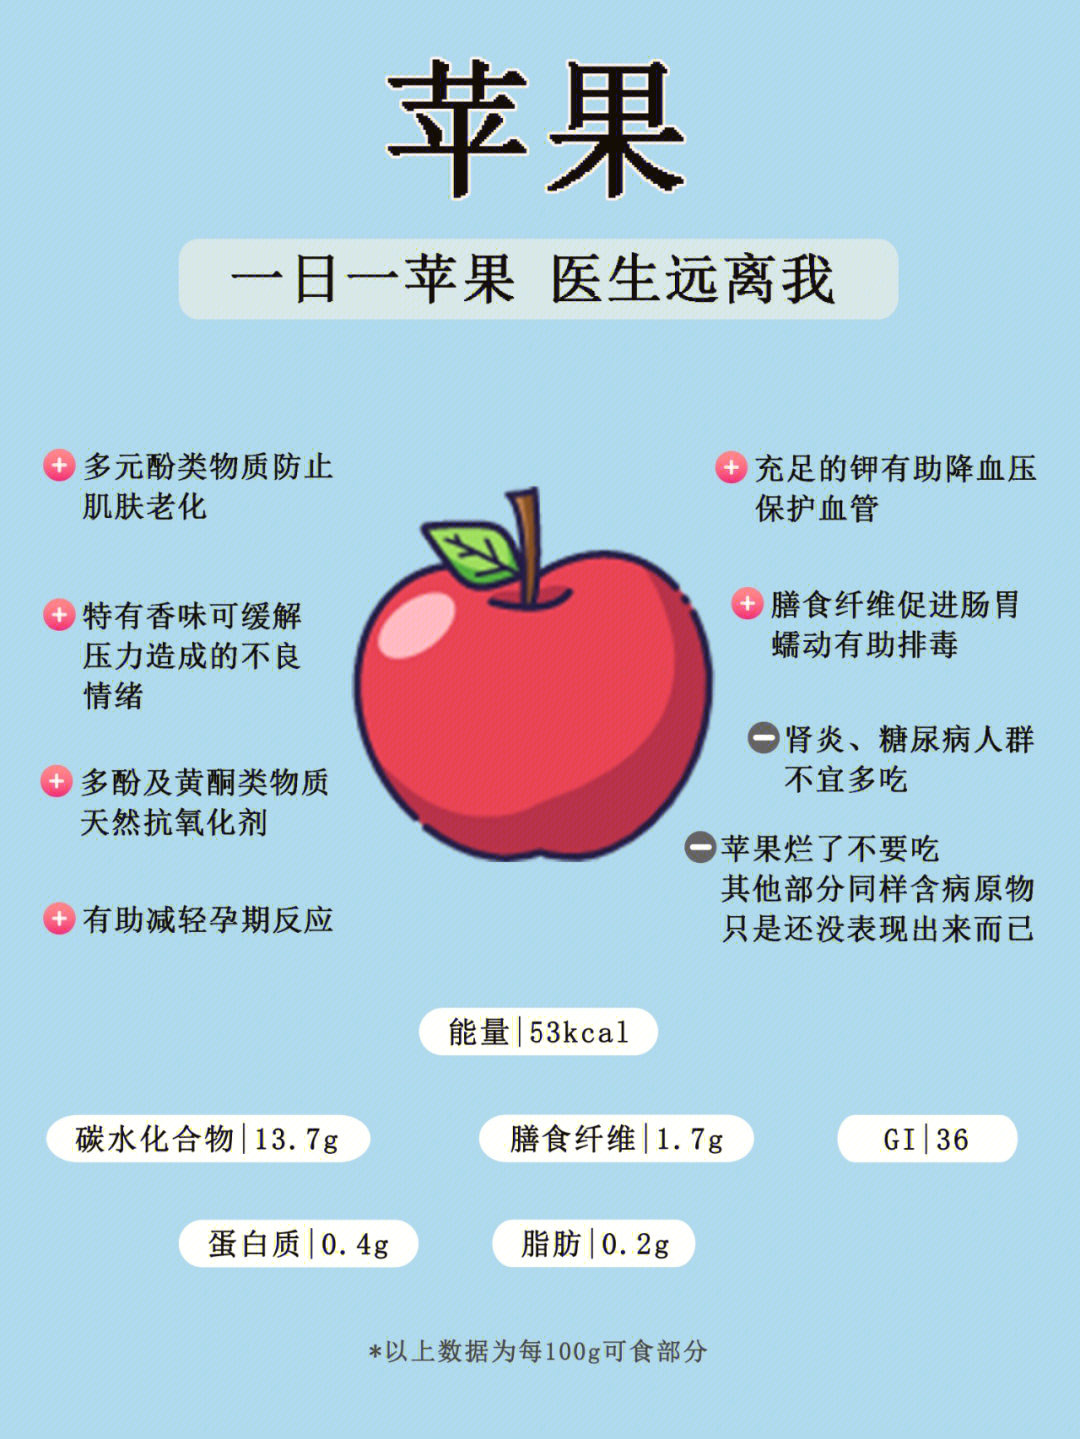 【苹果】含有的钾还可以排出人体多余的钠,饮食中大部分钠是以氯化钠